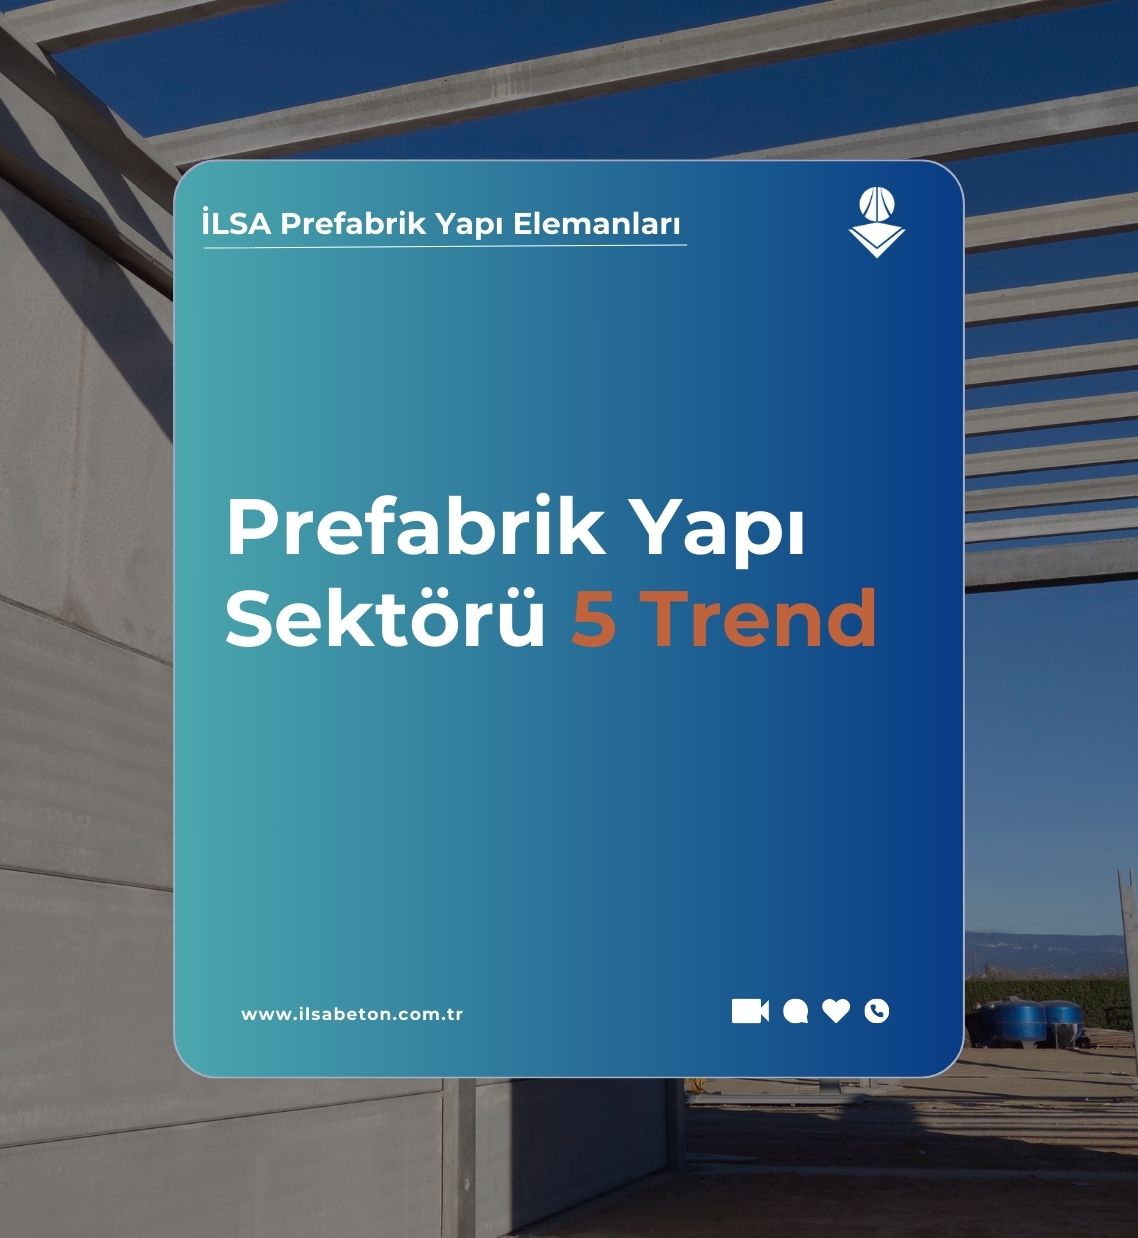 Prefabrik Yapı Sektörü: 5 Trend